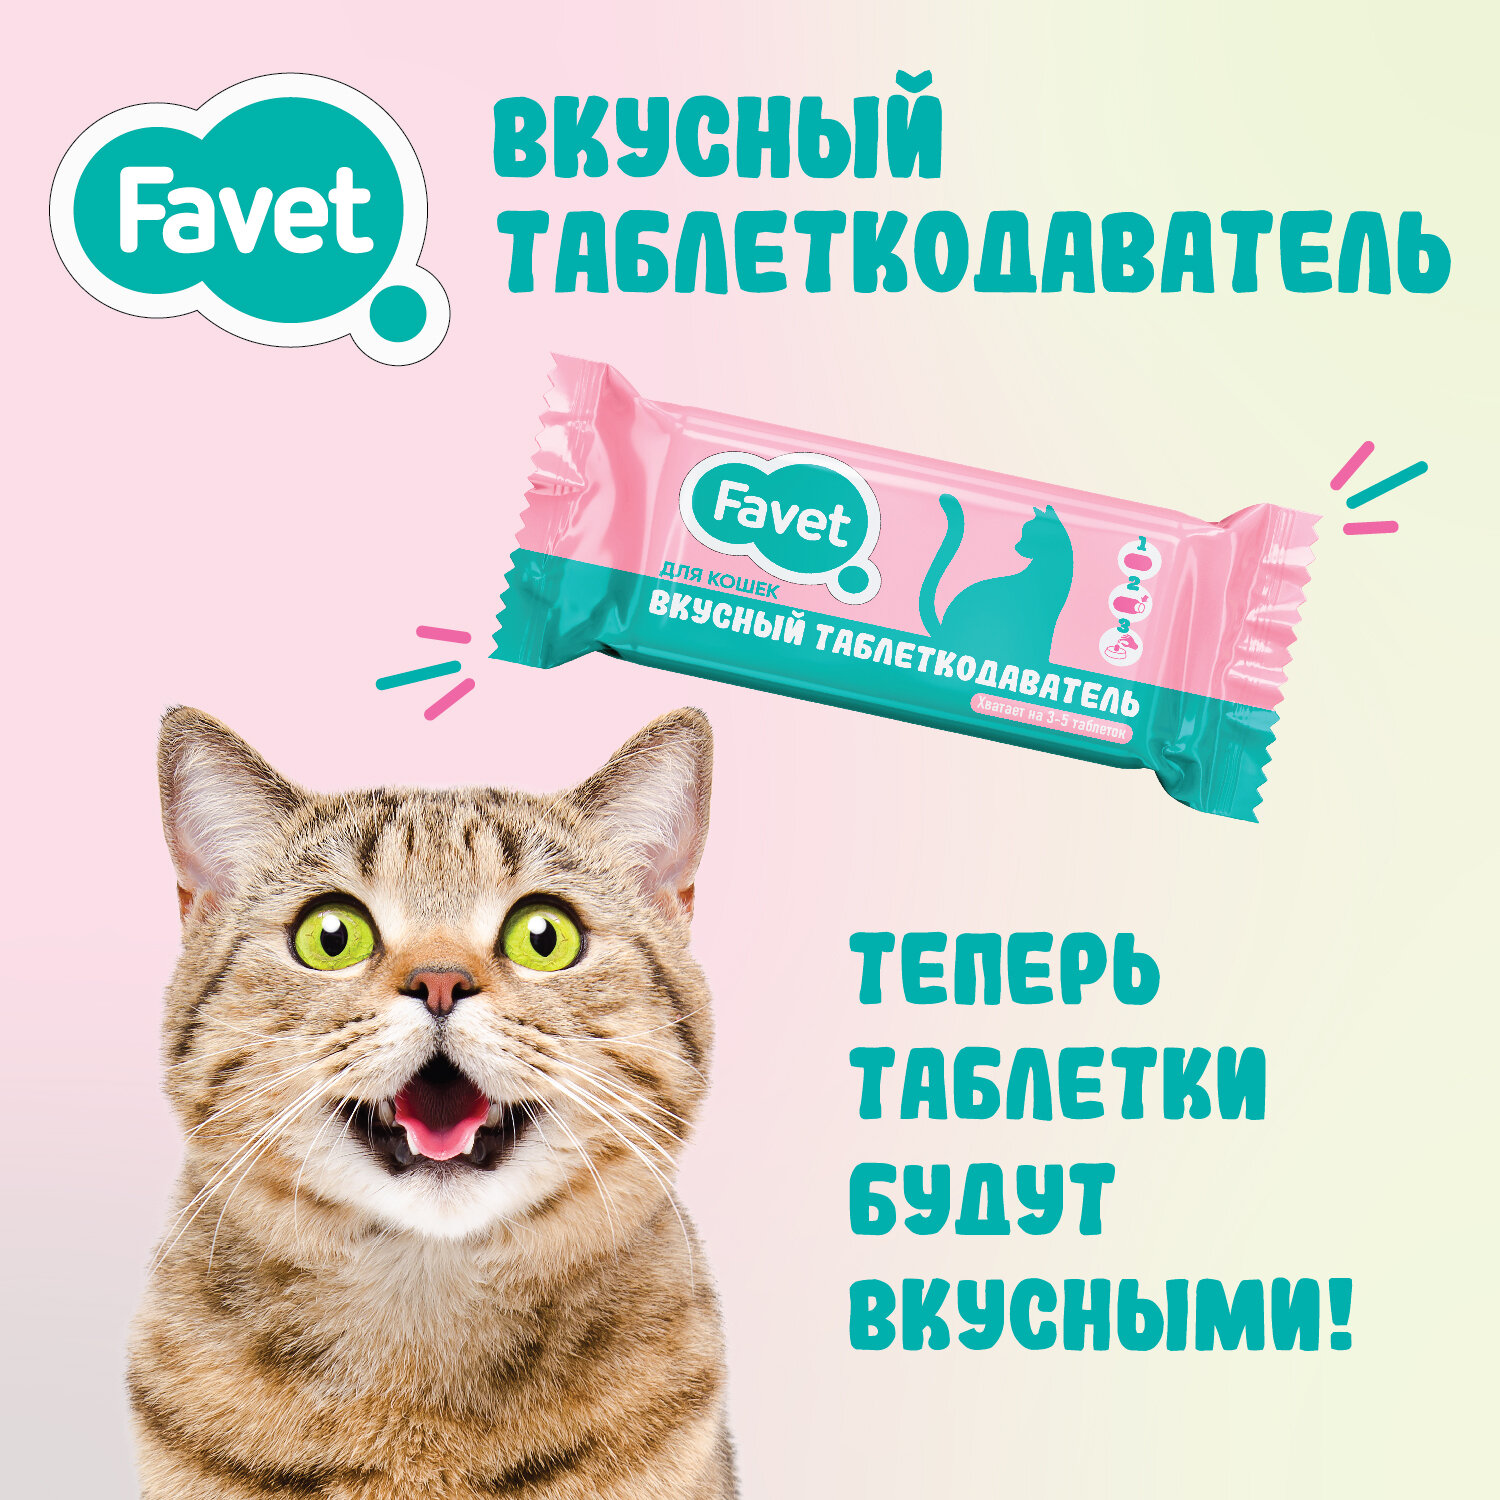 Favet Вкусный таблеткодаватель для кошек, 4 шт.